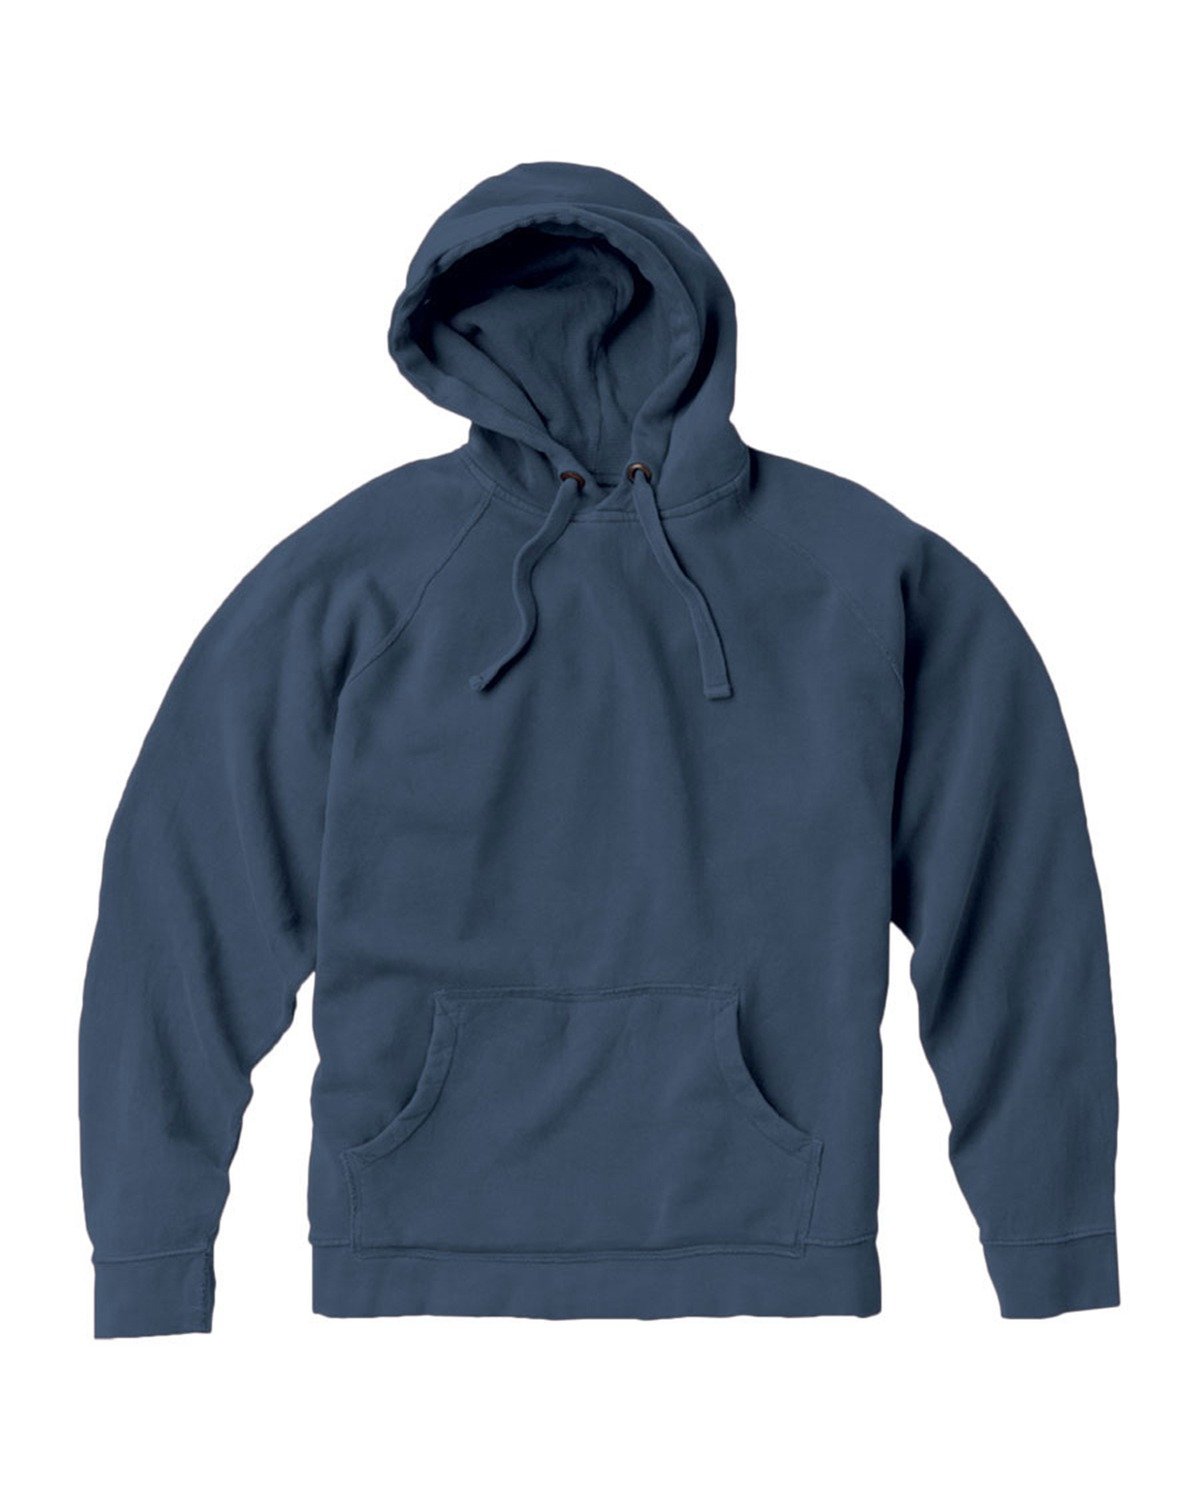 Adult Hooded Sweatshirt-